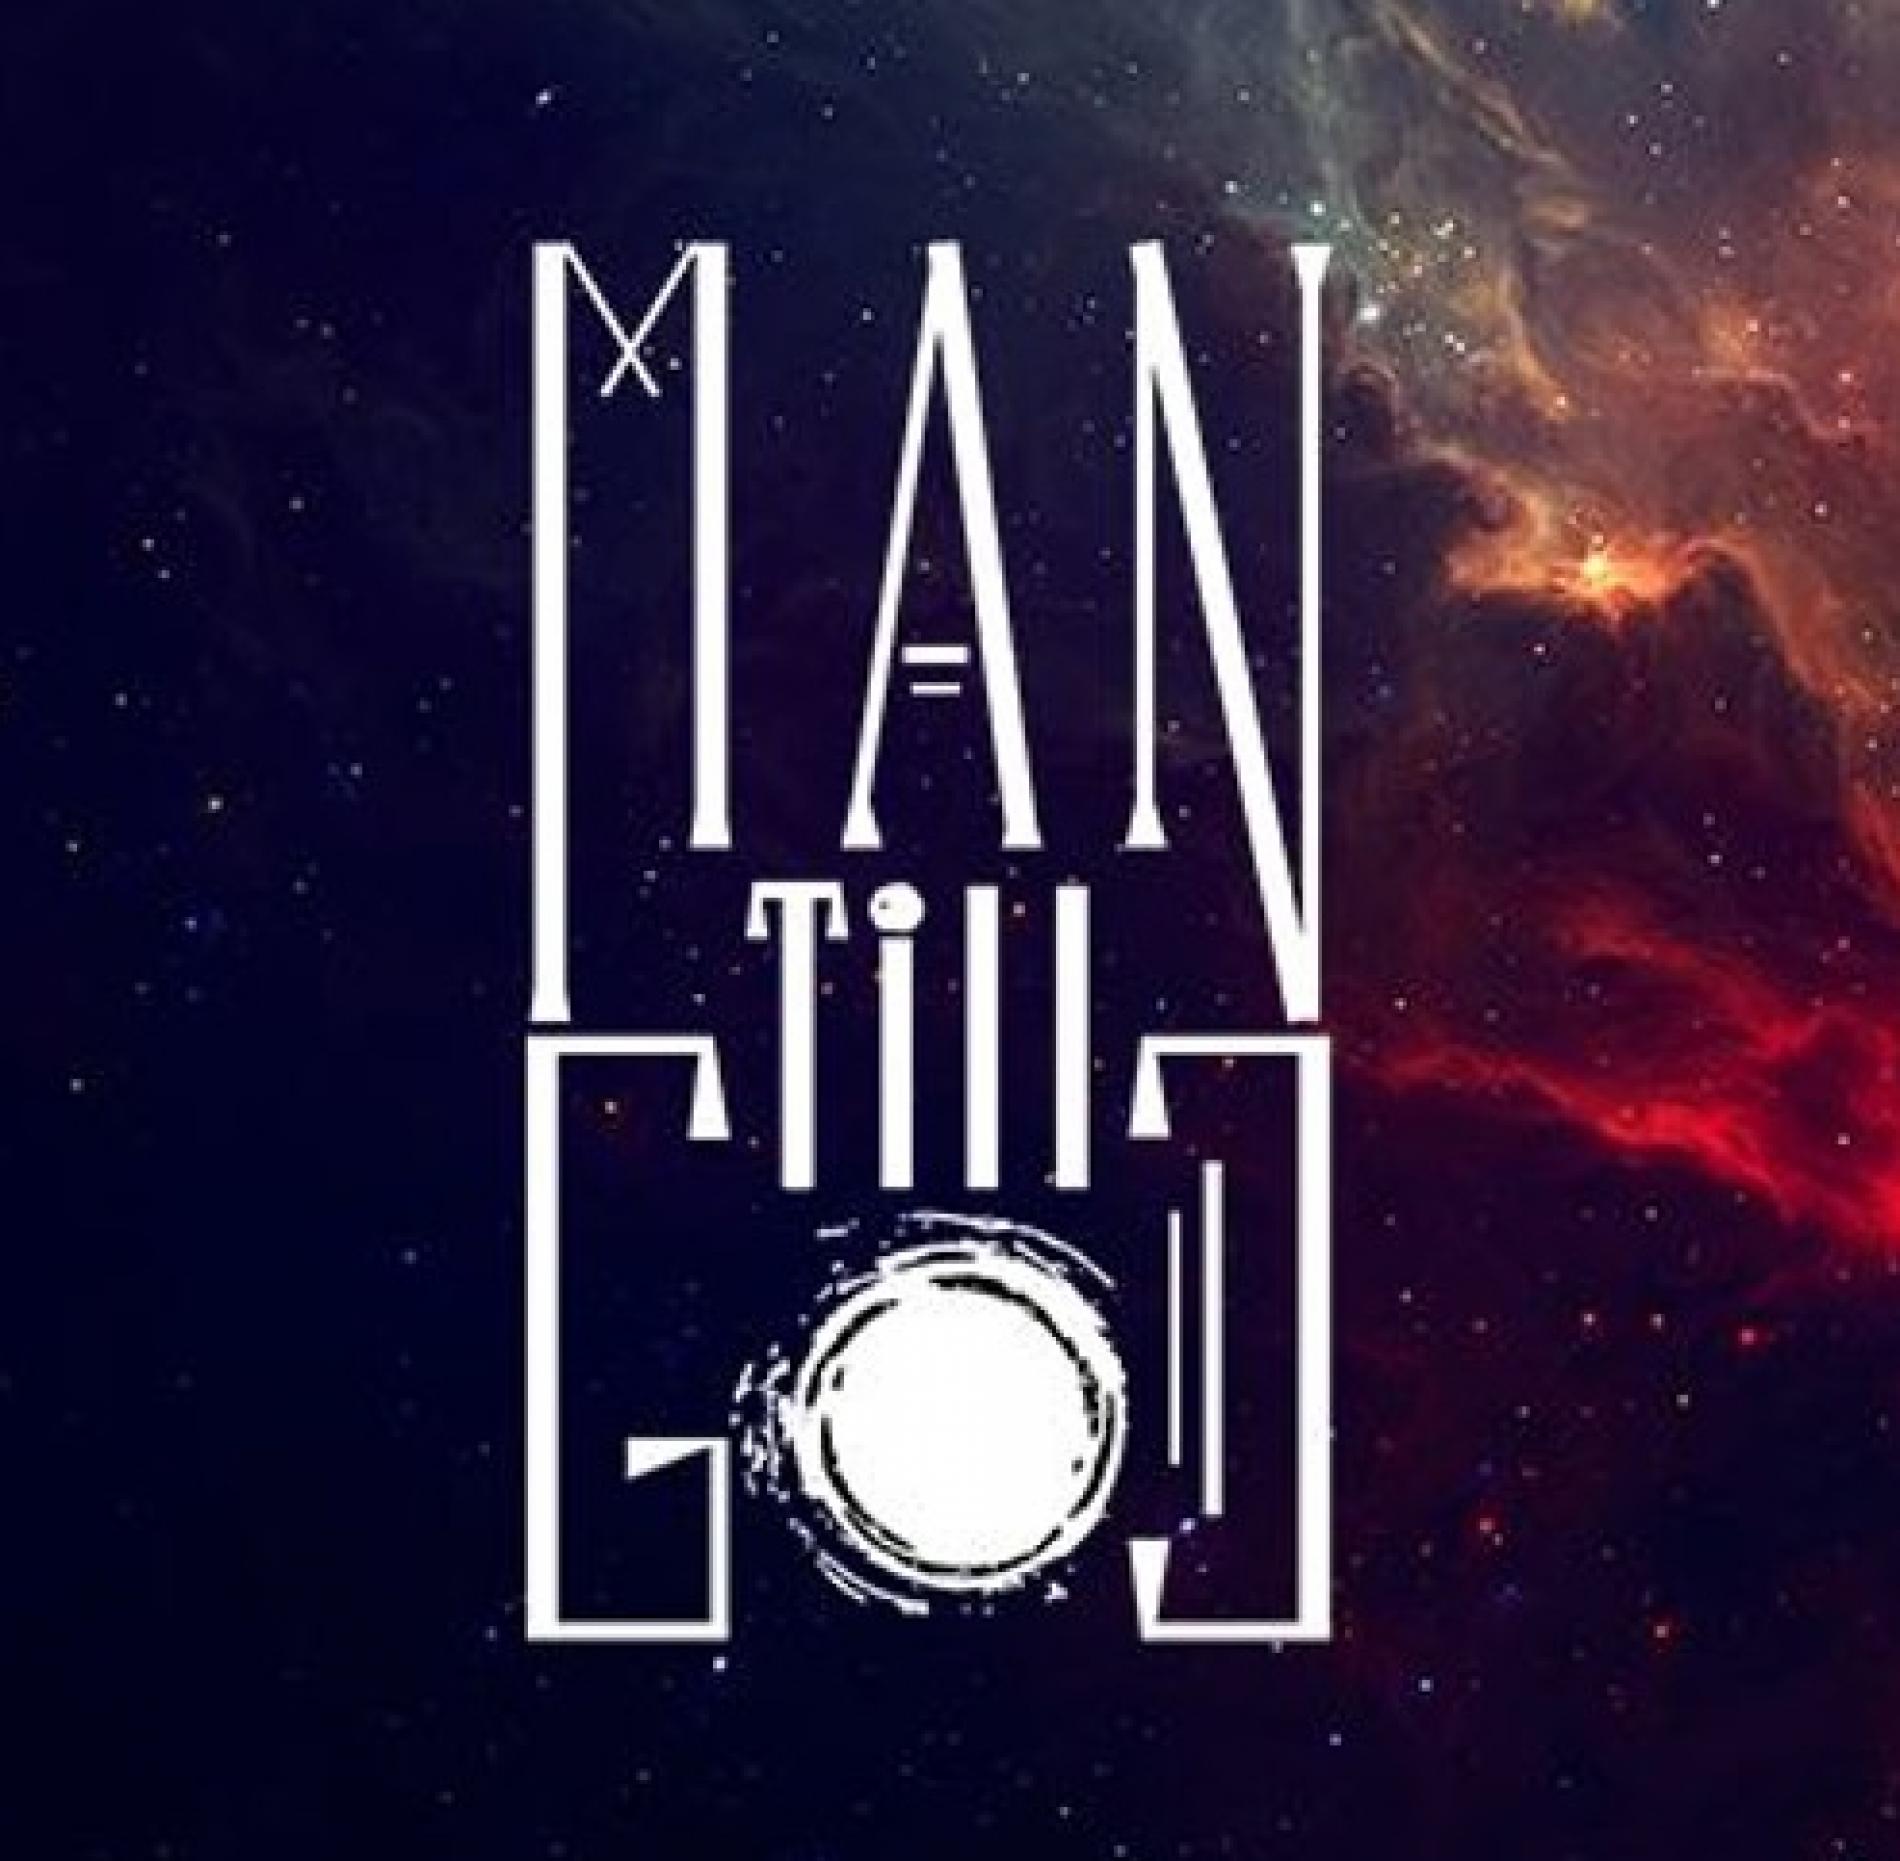 Man Till God – The Night Sky